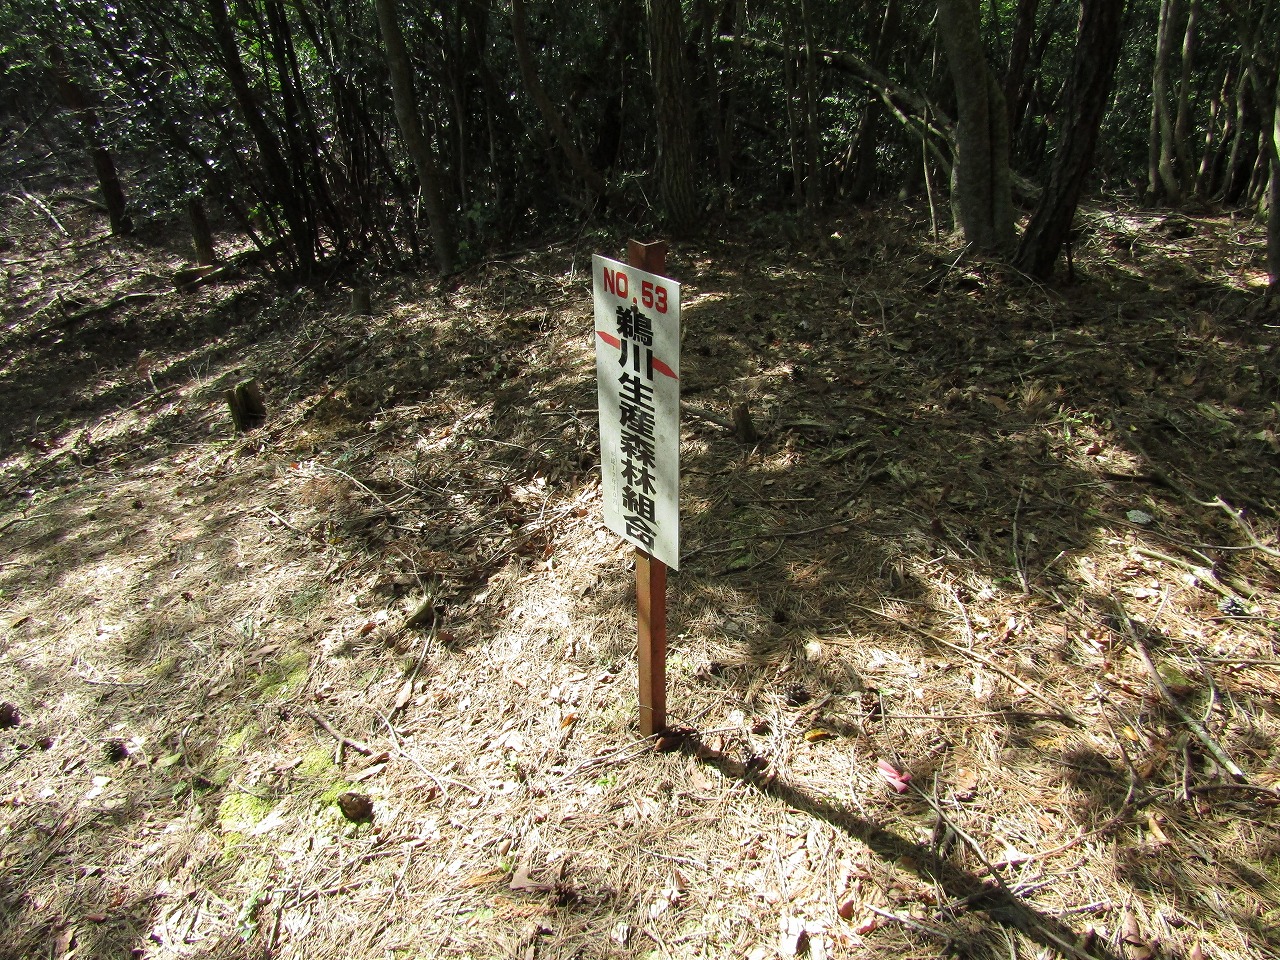 鵜川生産森林組合の看板、N0,53